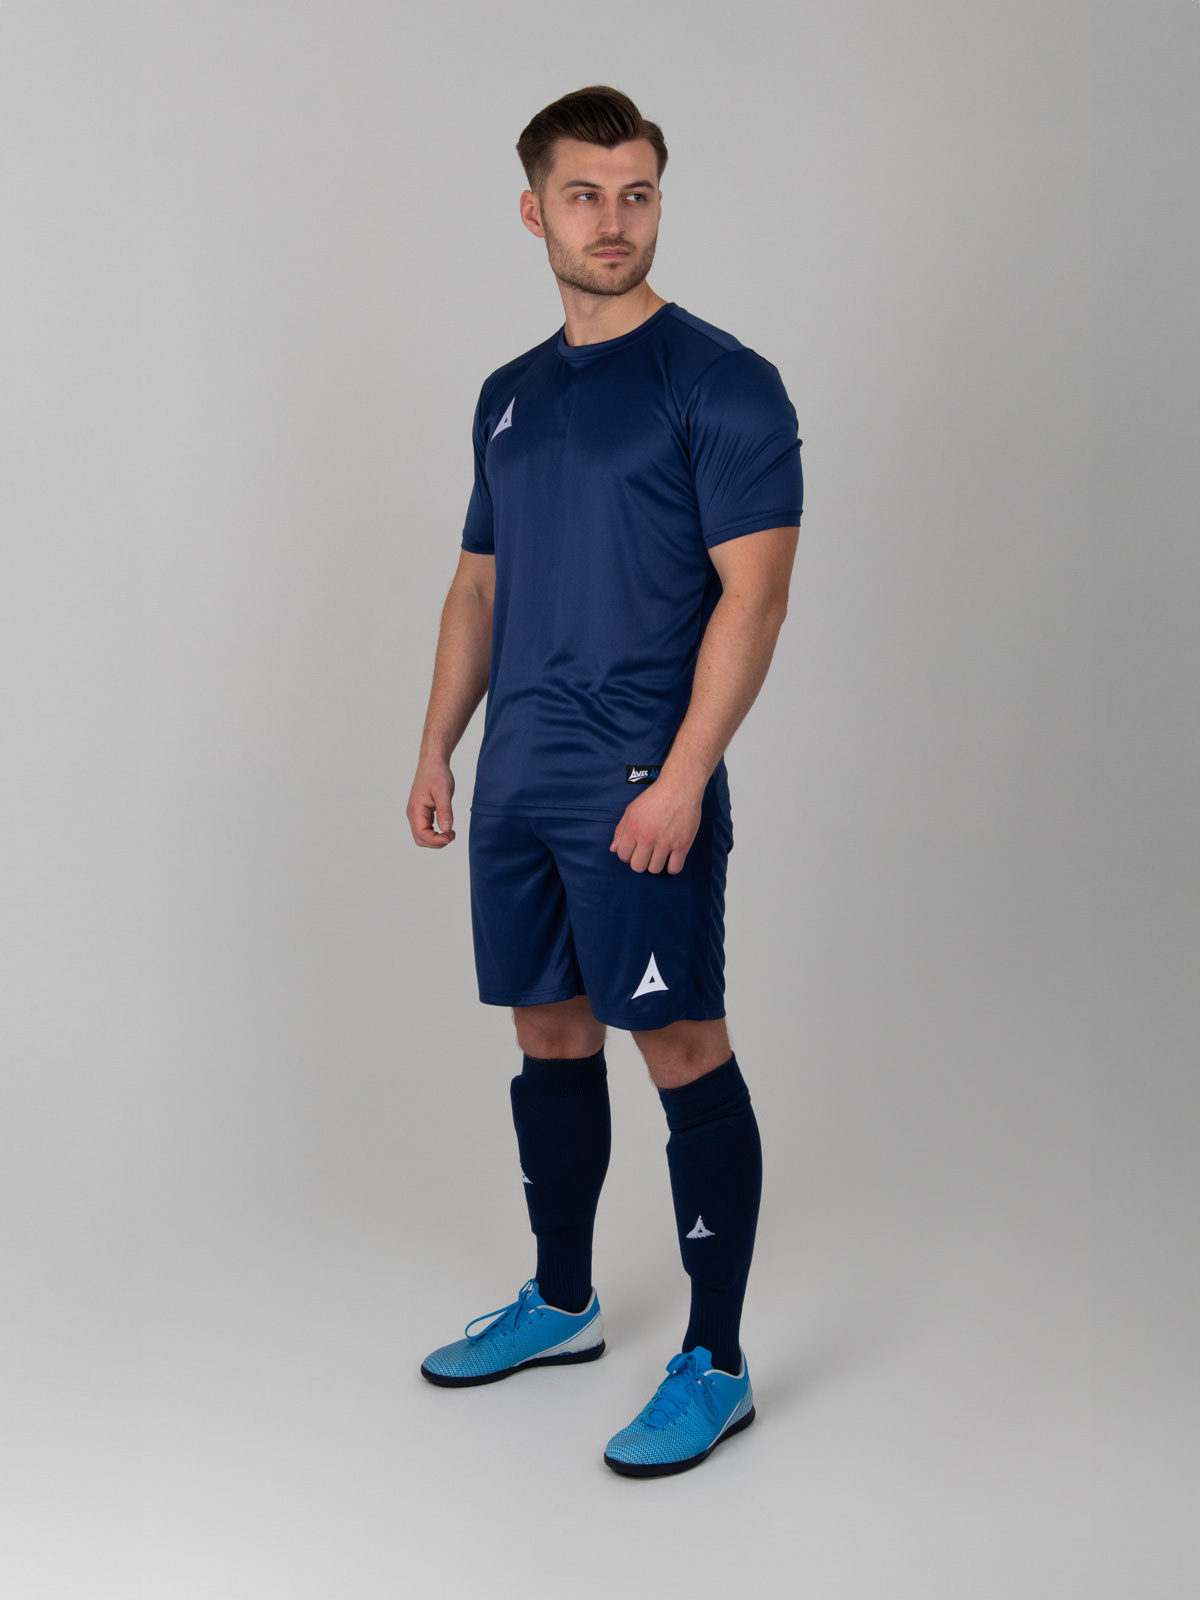 a man wearing an all navy blue football kit